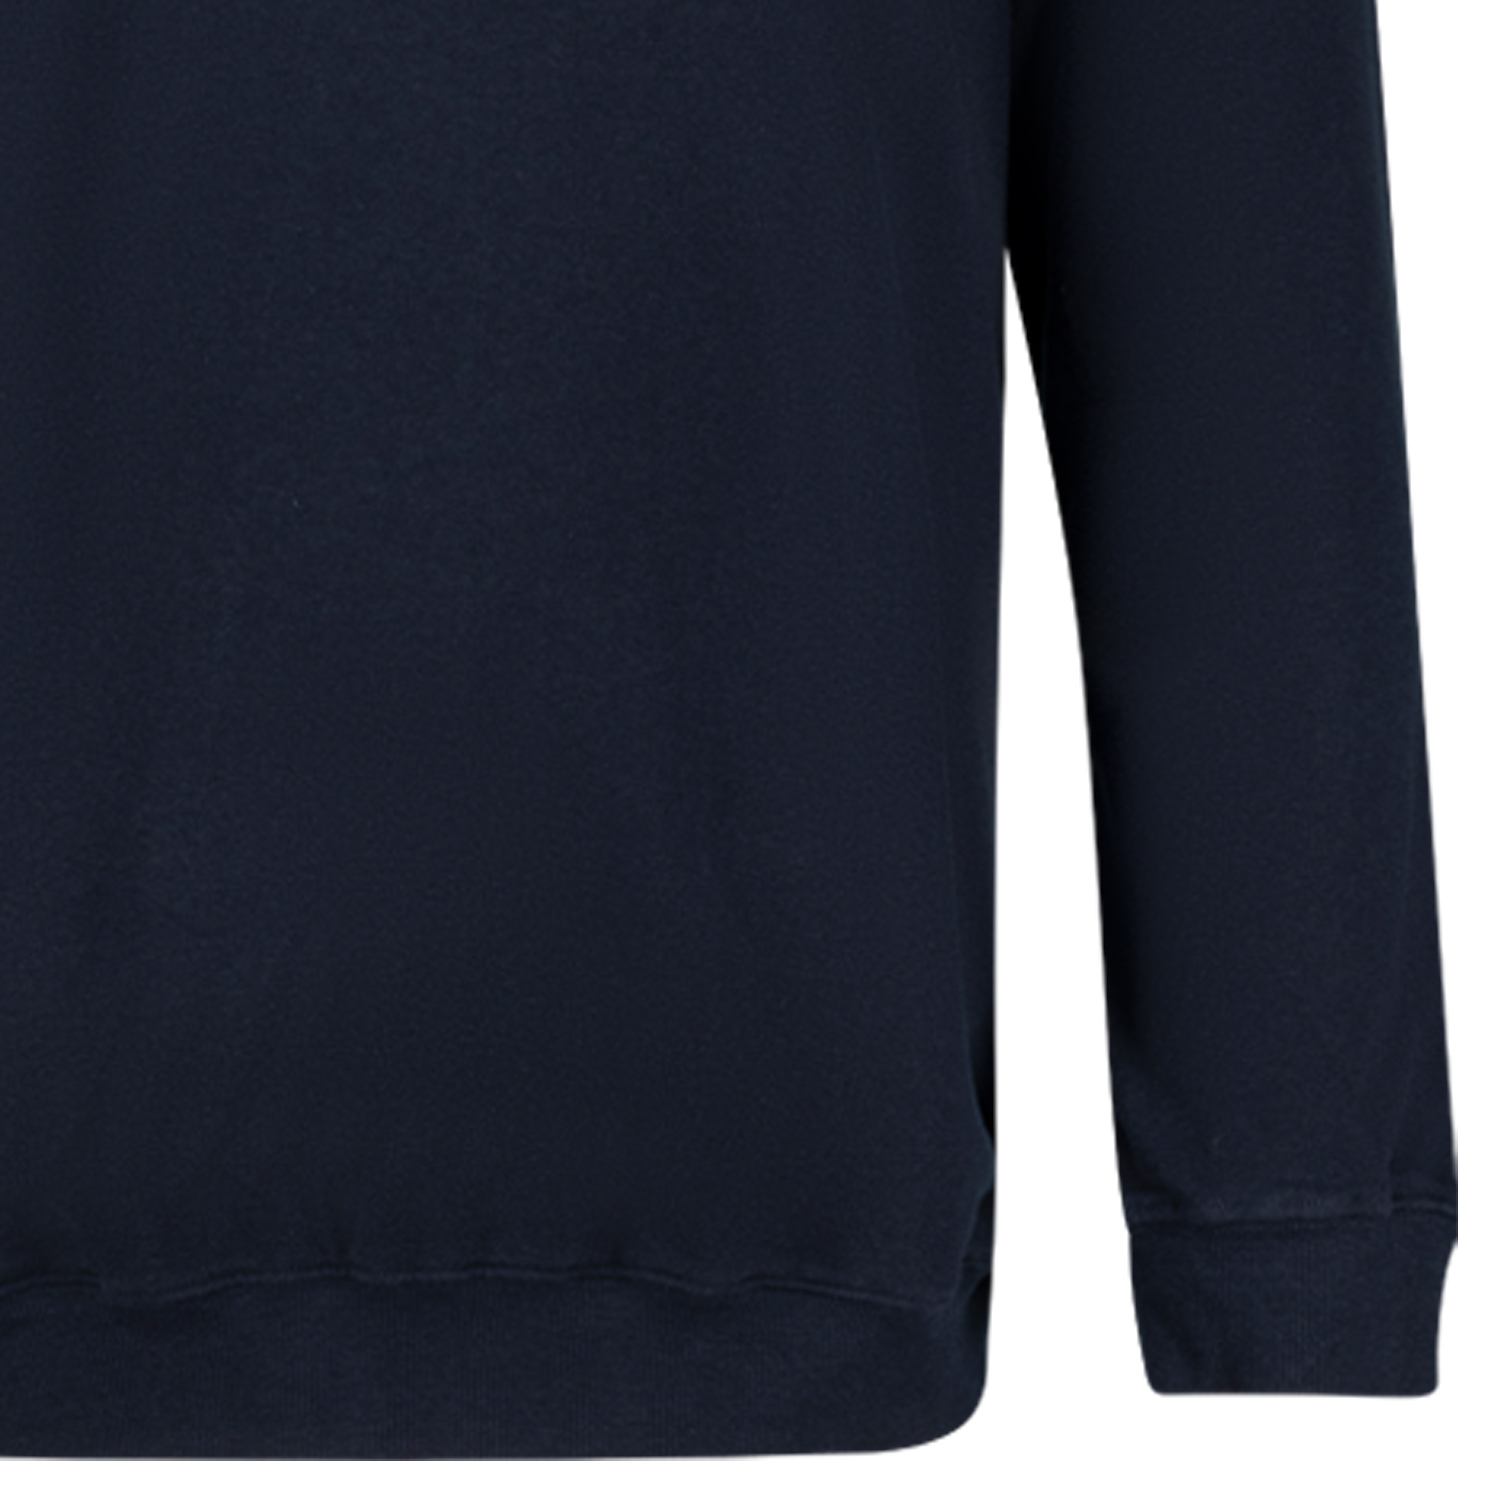 Übergrößen Sweatshirt ATHEN in dunkelblau by ADAMO bis 14XL